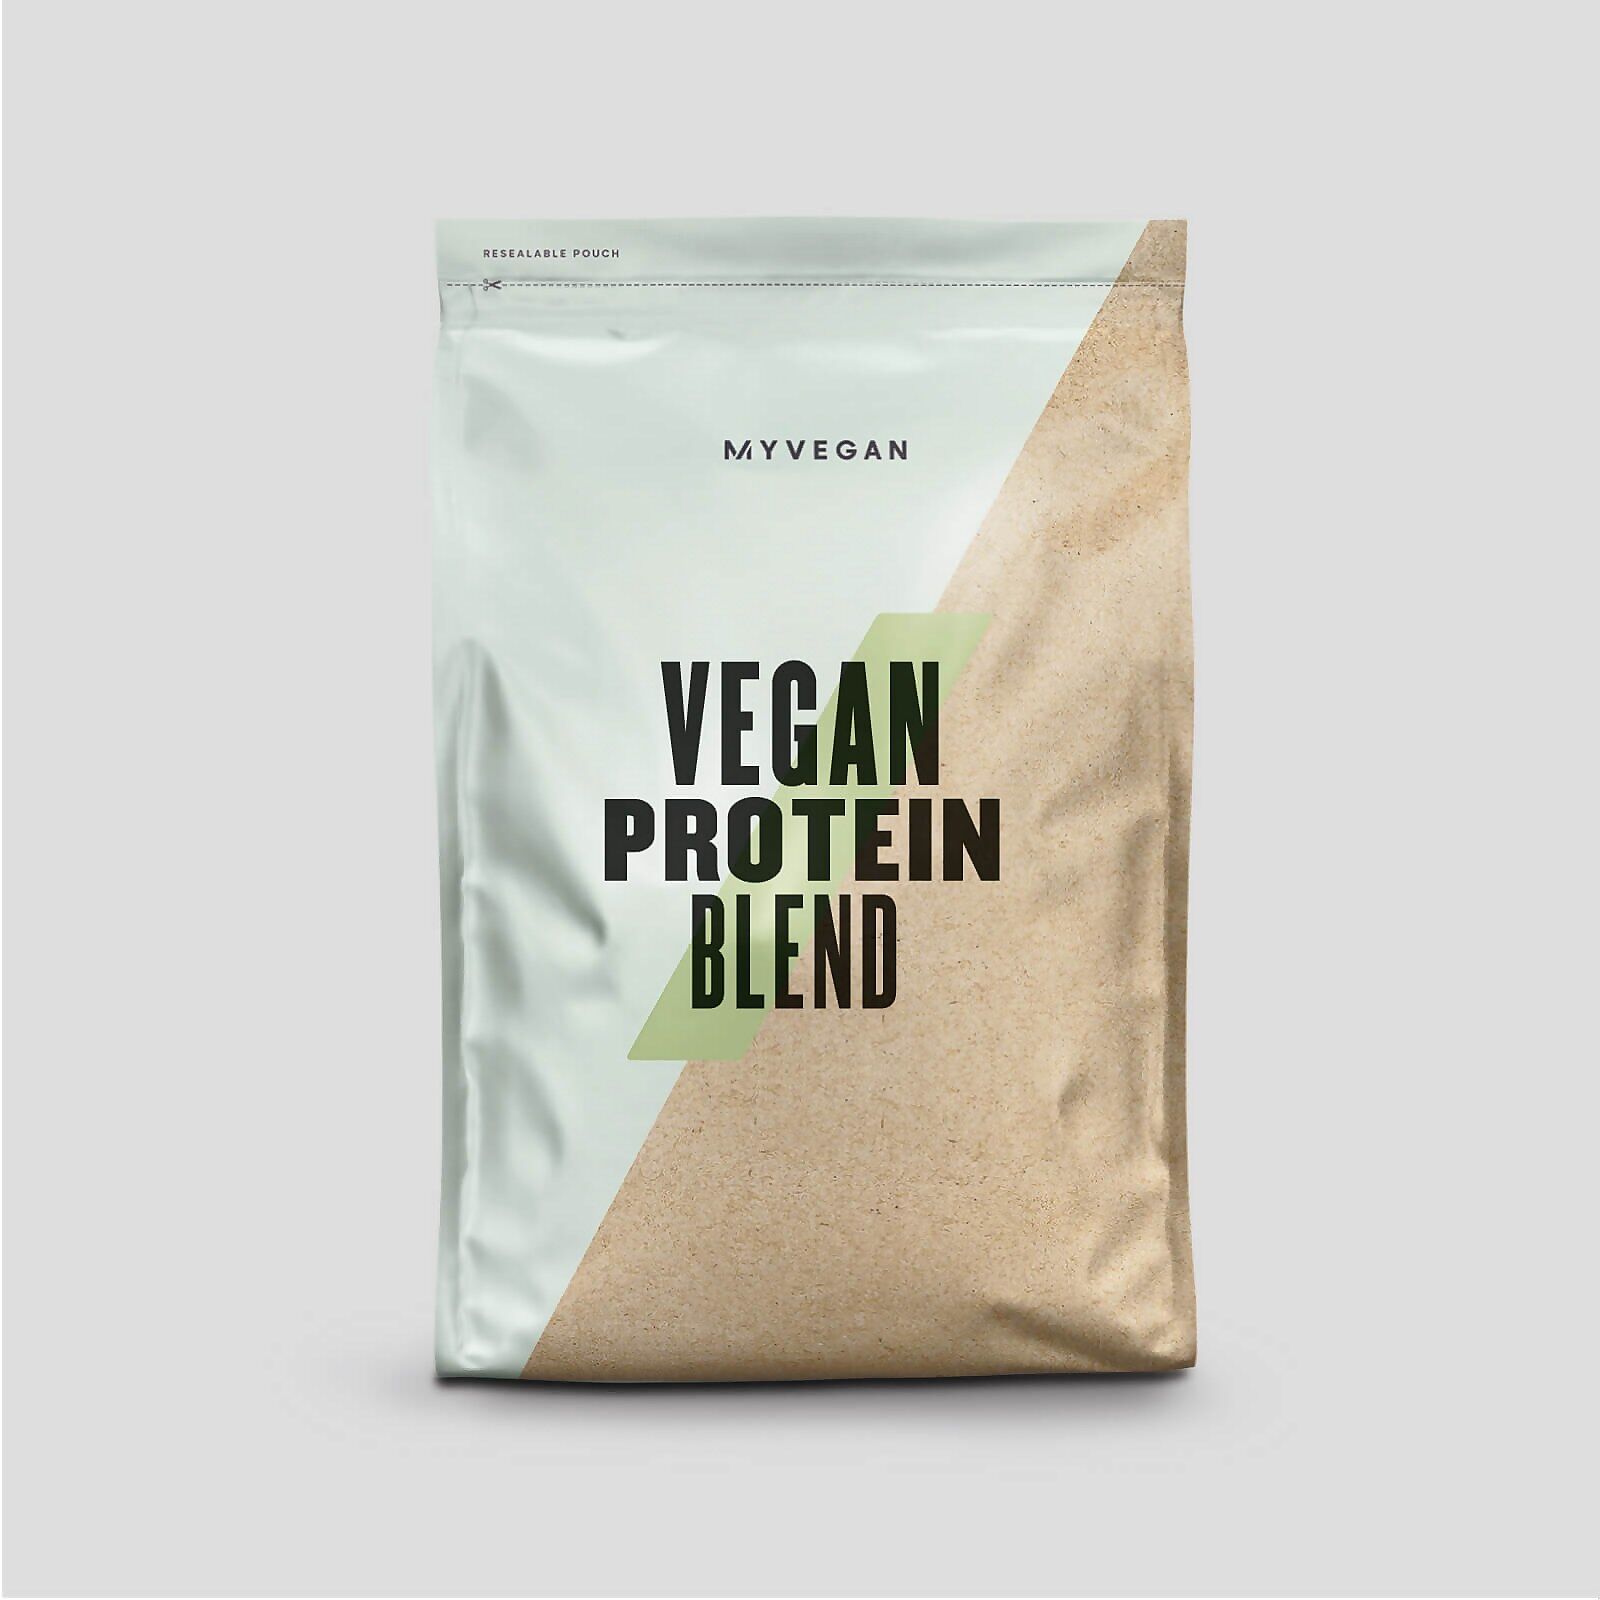 Myprotein Vegan Protein Blend - 2.5kg - Unflavoured